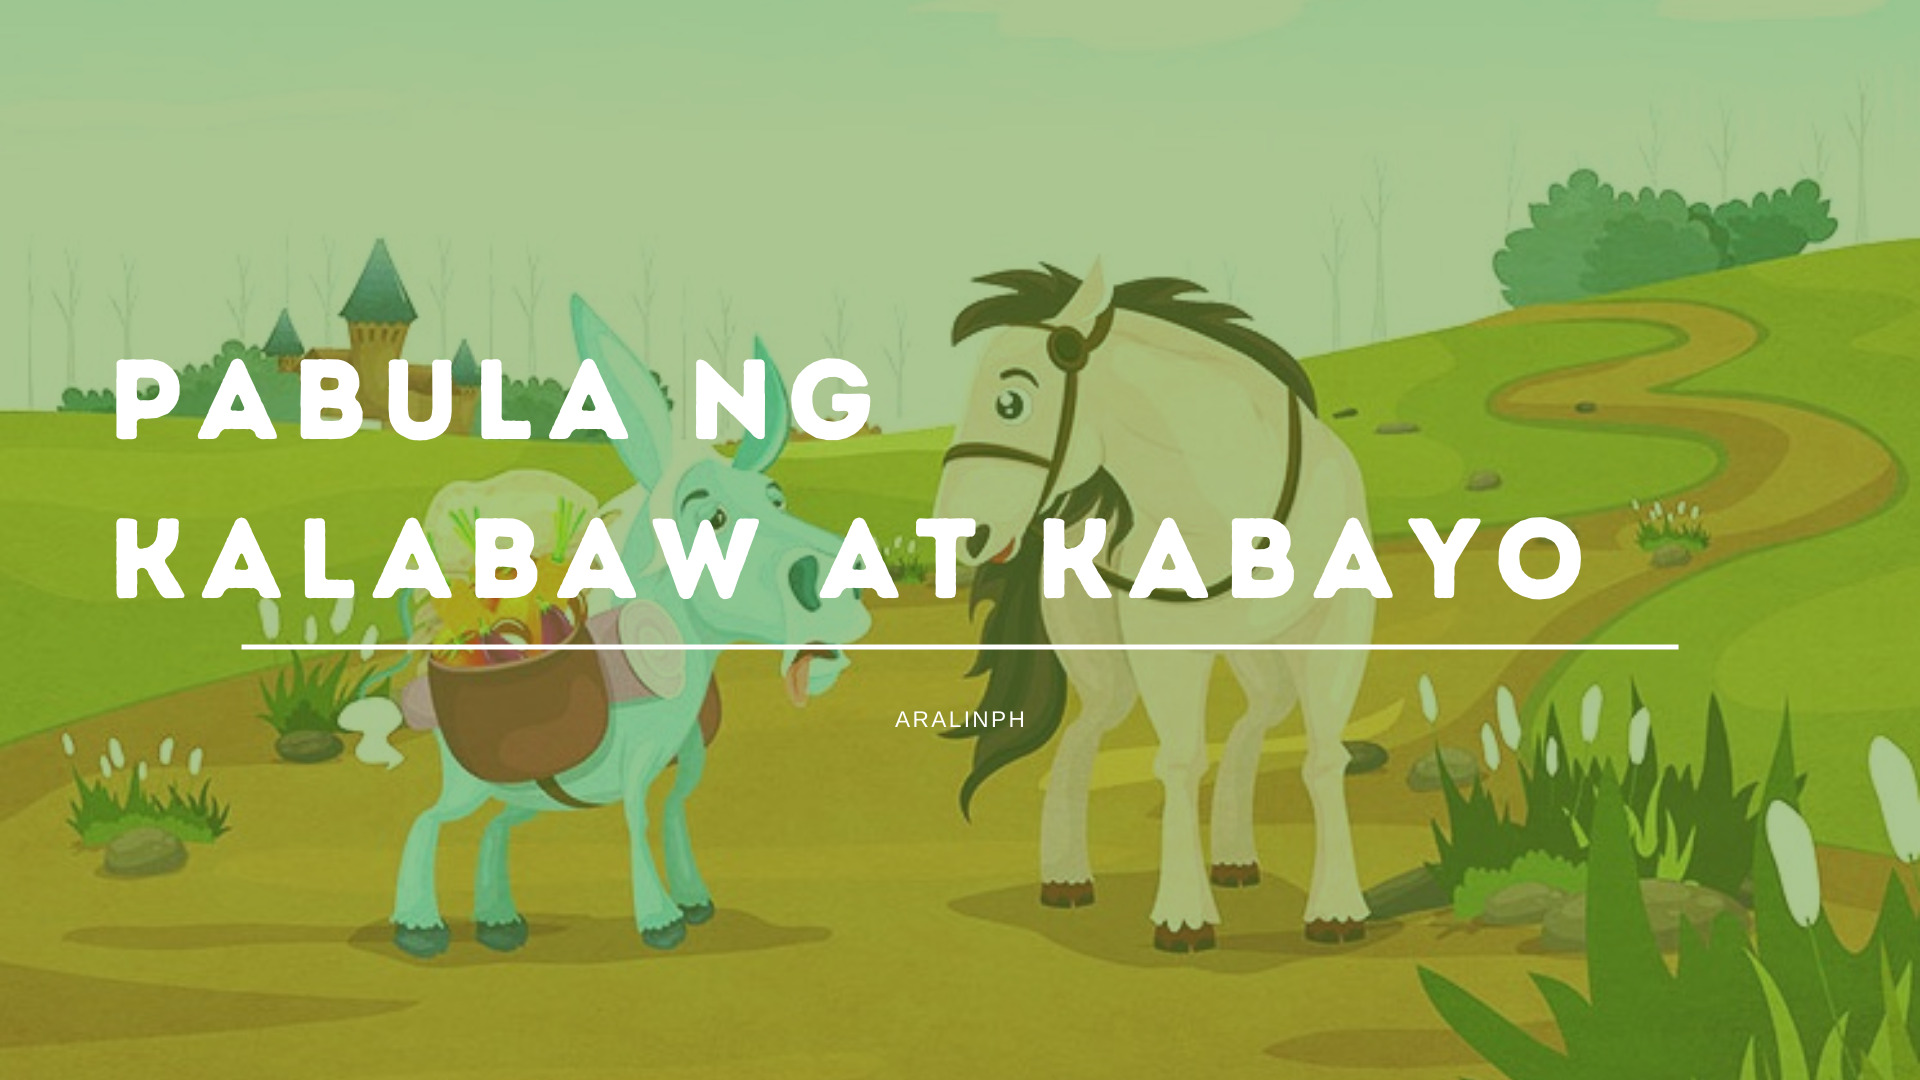 Pabula ng Kabayo at Kalabaw - Aralin Philippines